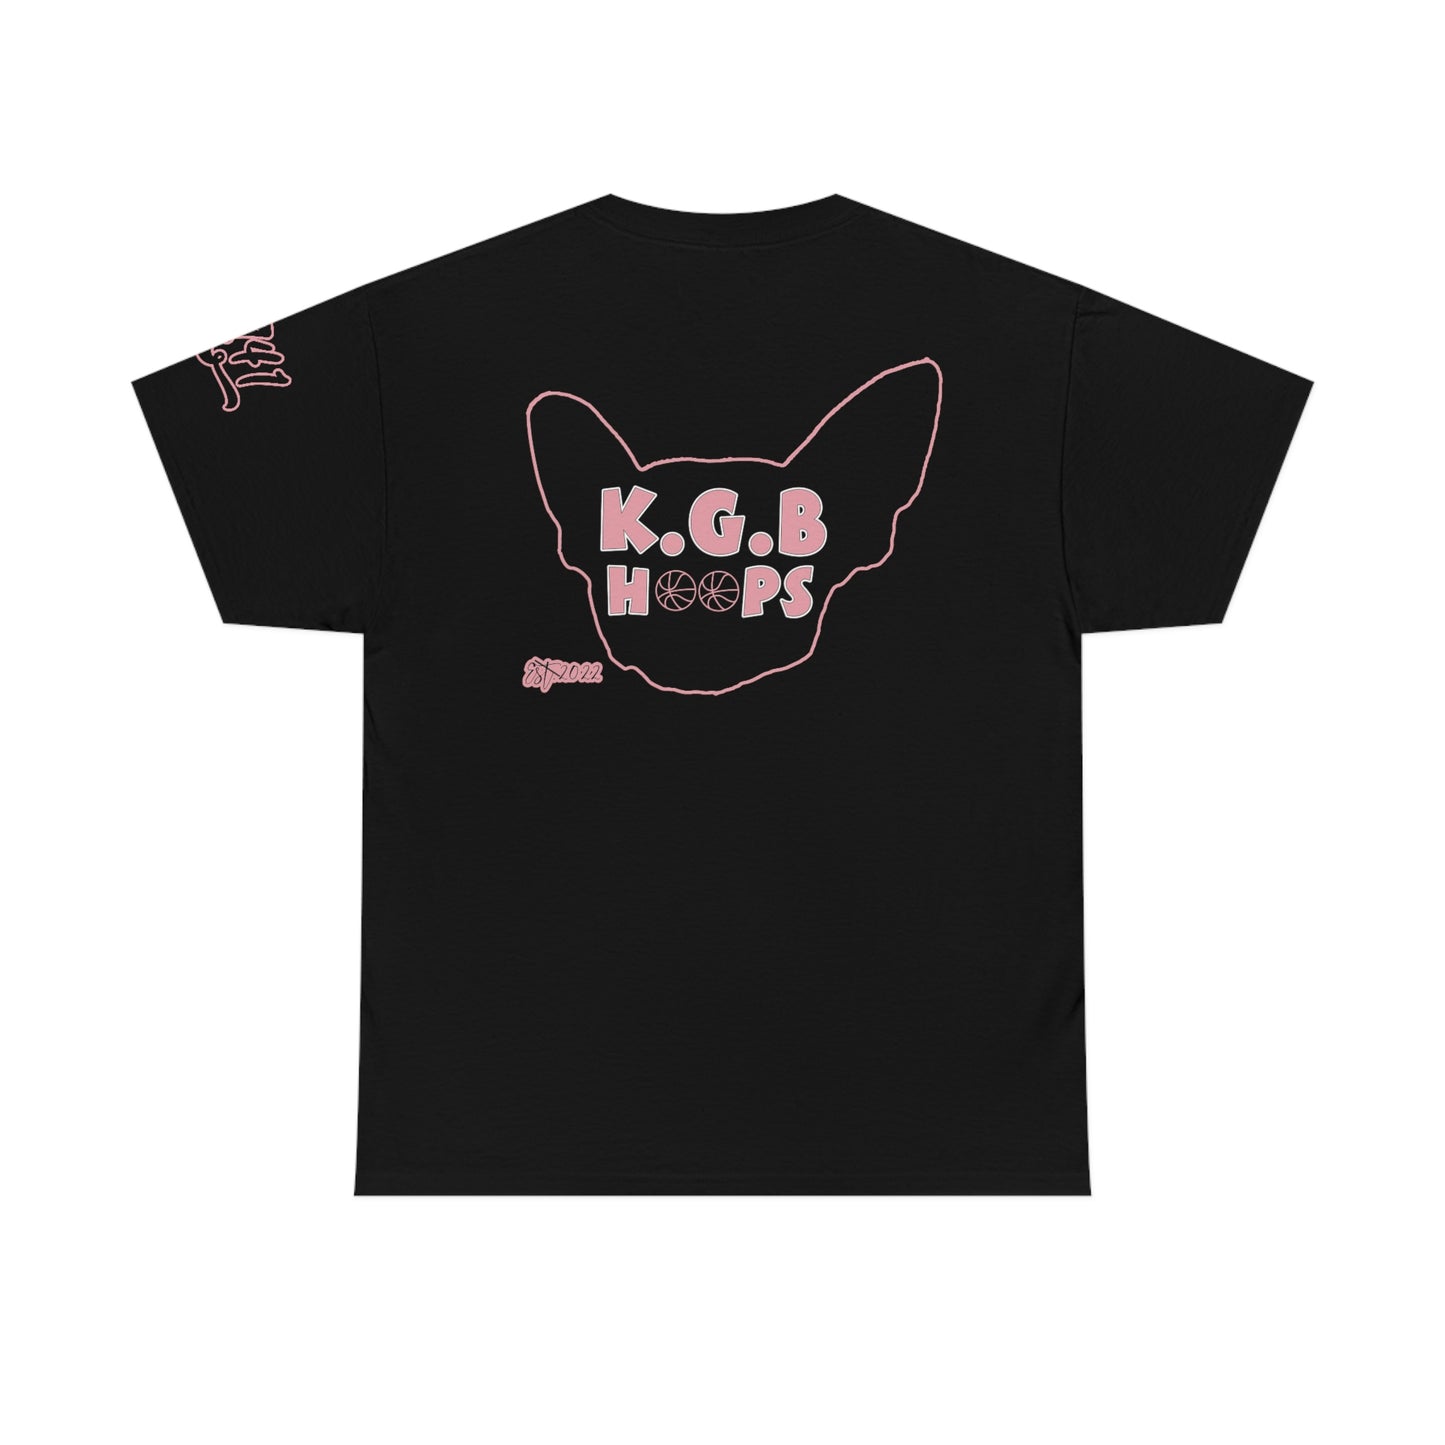 KGBXA41 Shirt